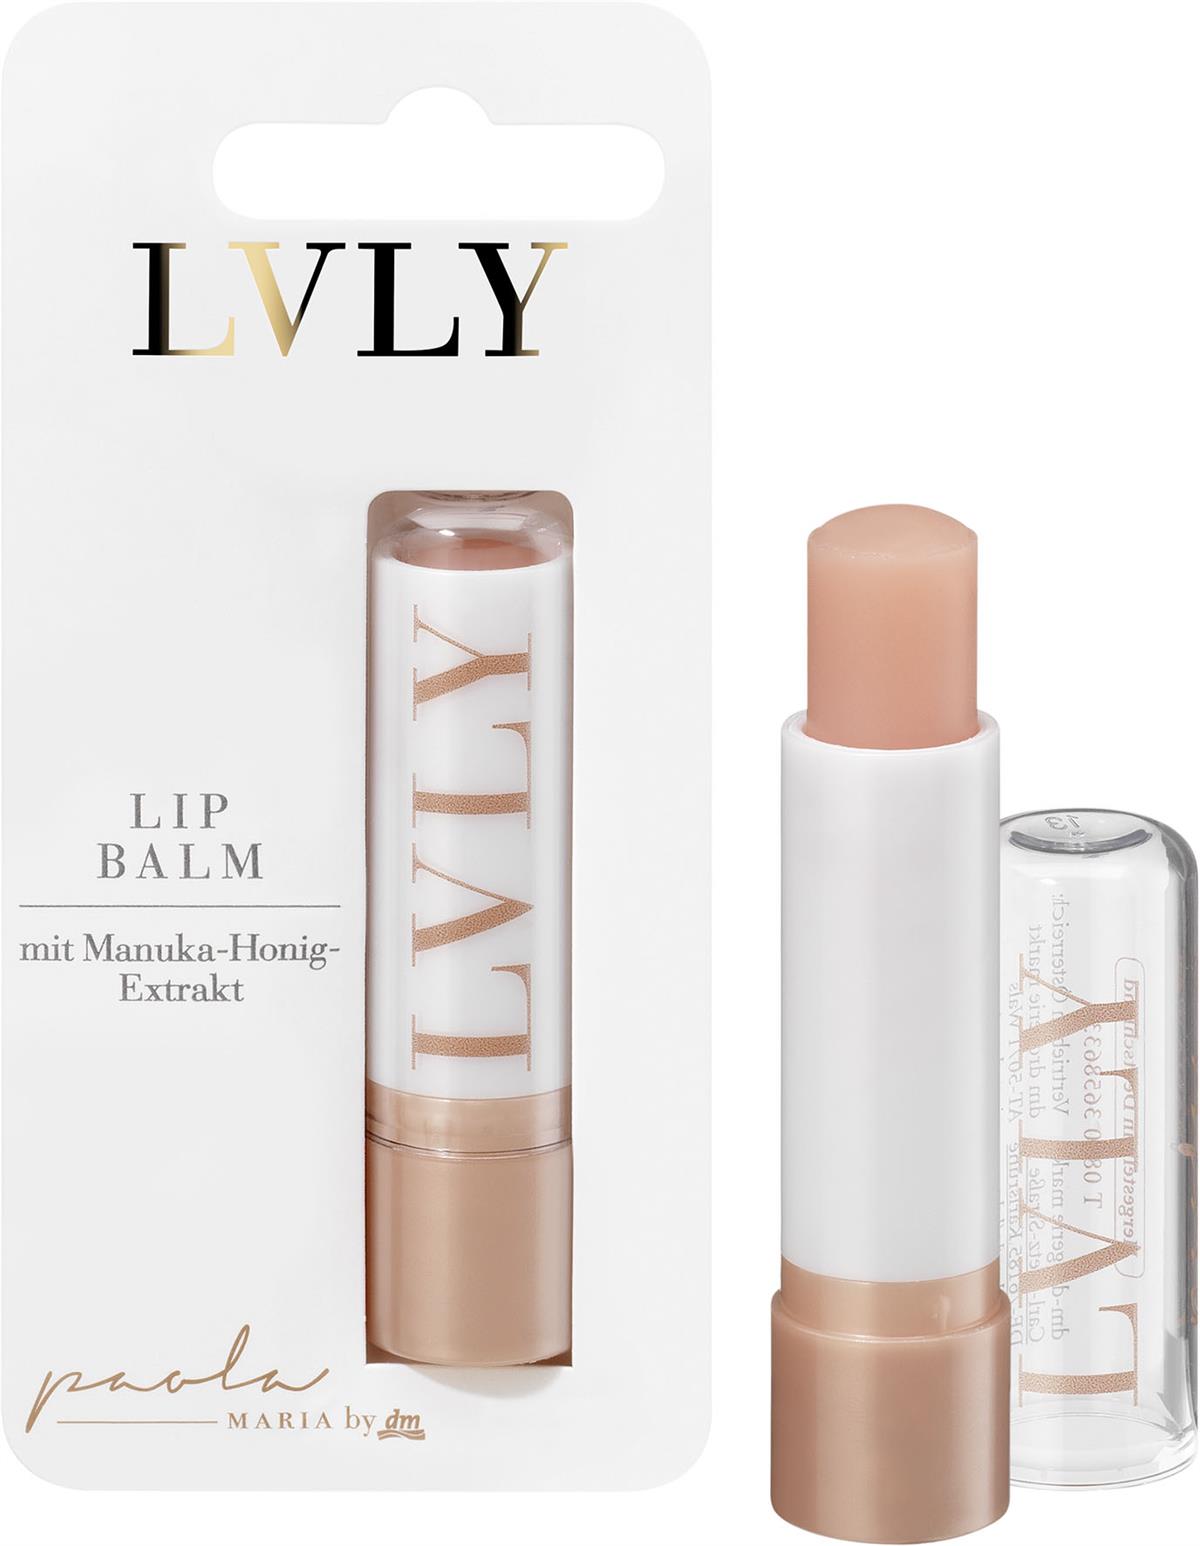 LVLY Lippenbalsam mit Manuka-Honig-Extrakt